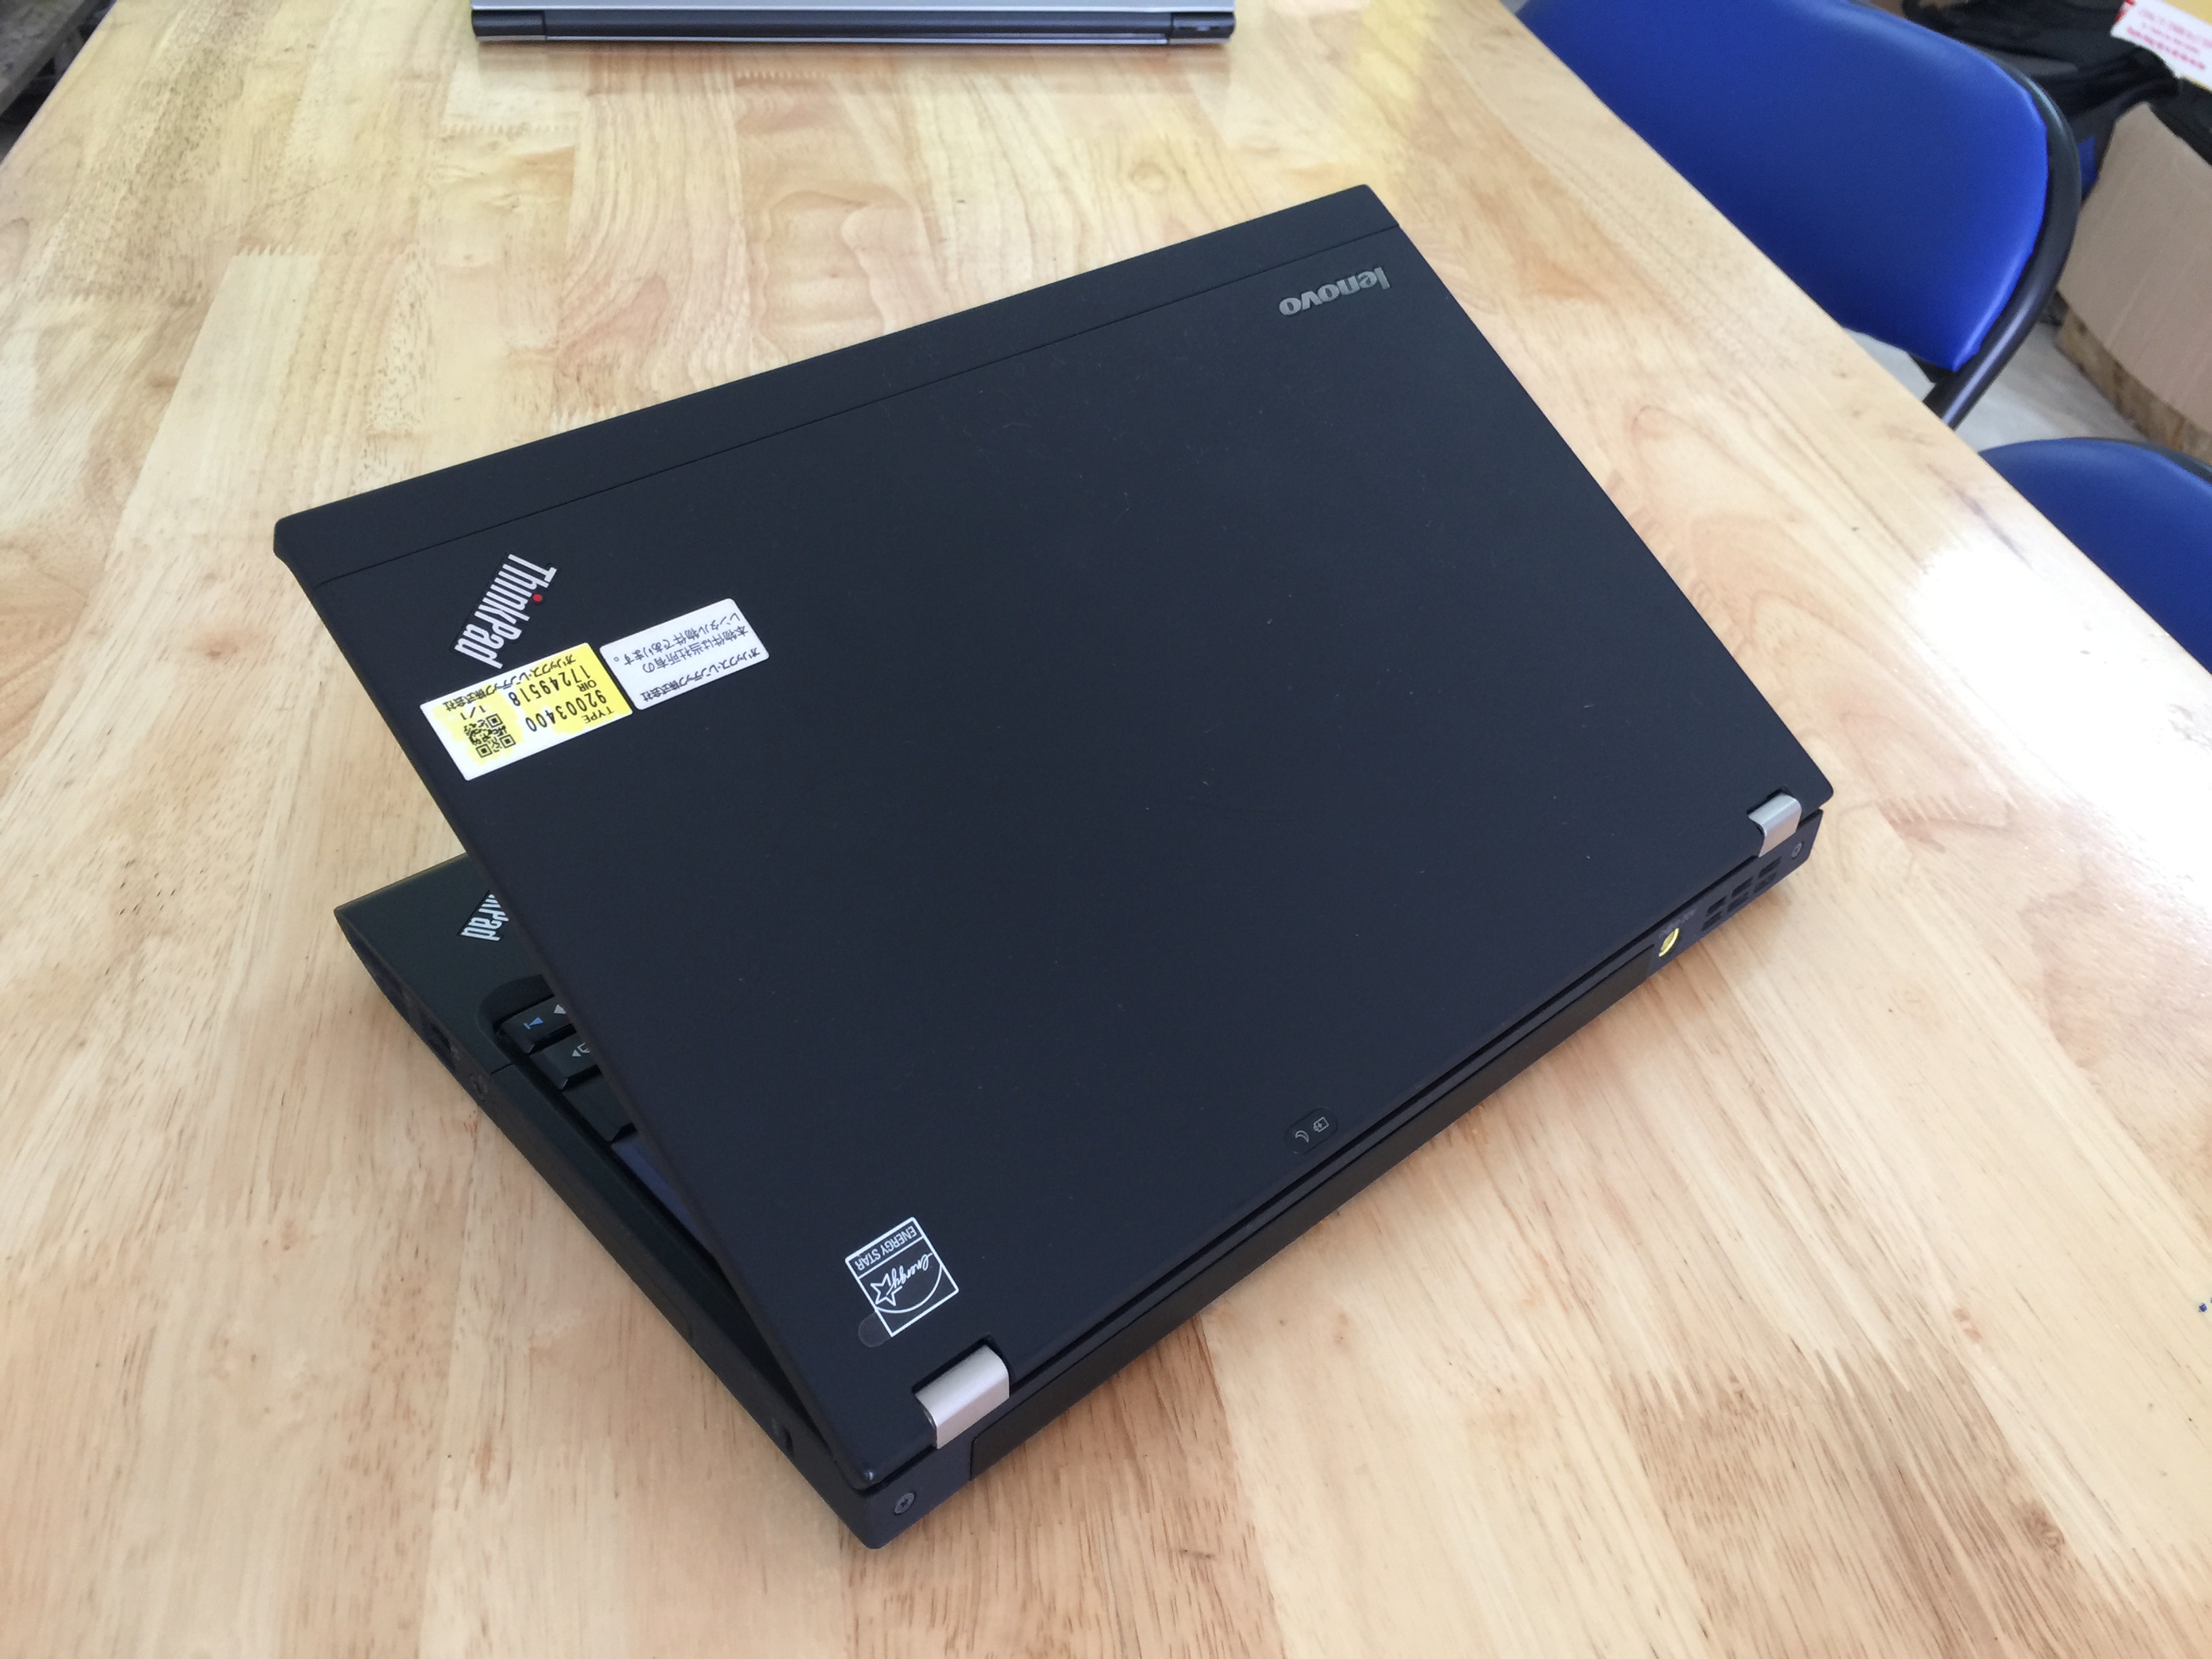 Lenovo ThinkPad X220 12.5 - Core i5 2.5GHz, 4GB RAM, 250GB HDD